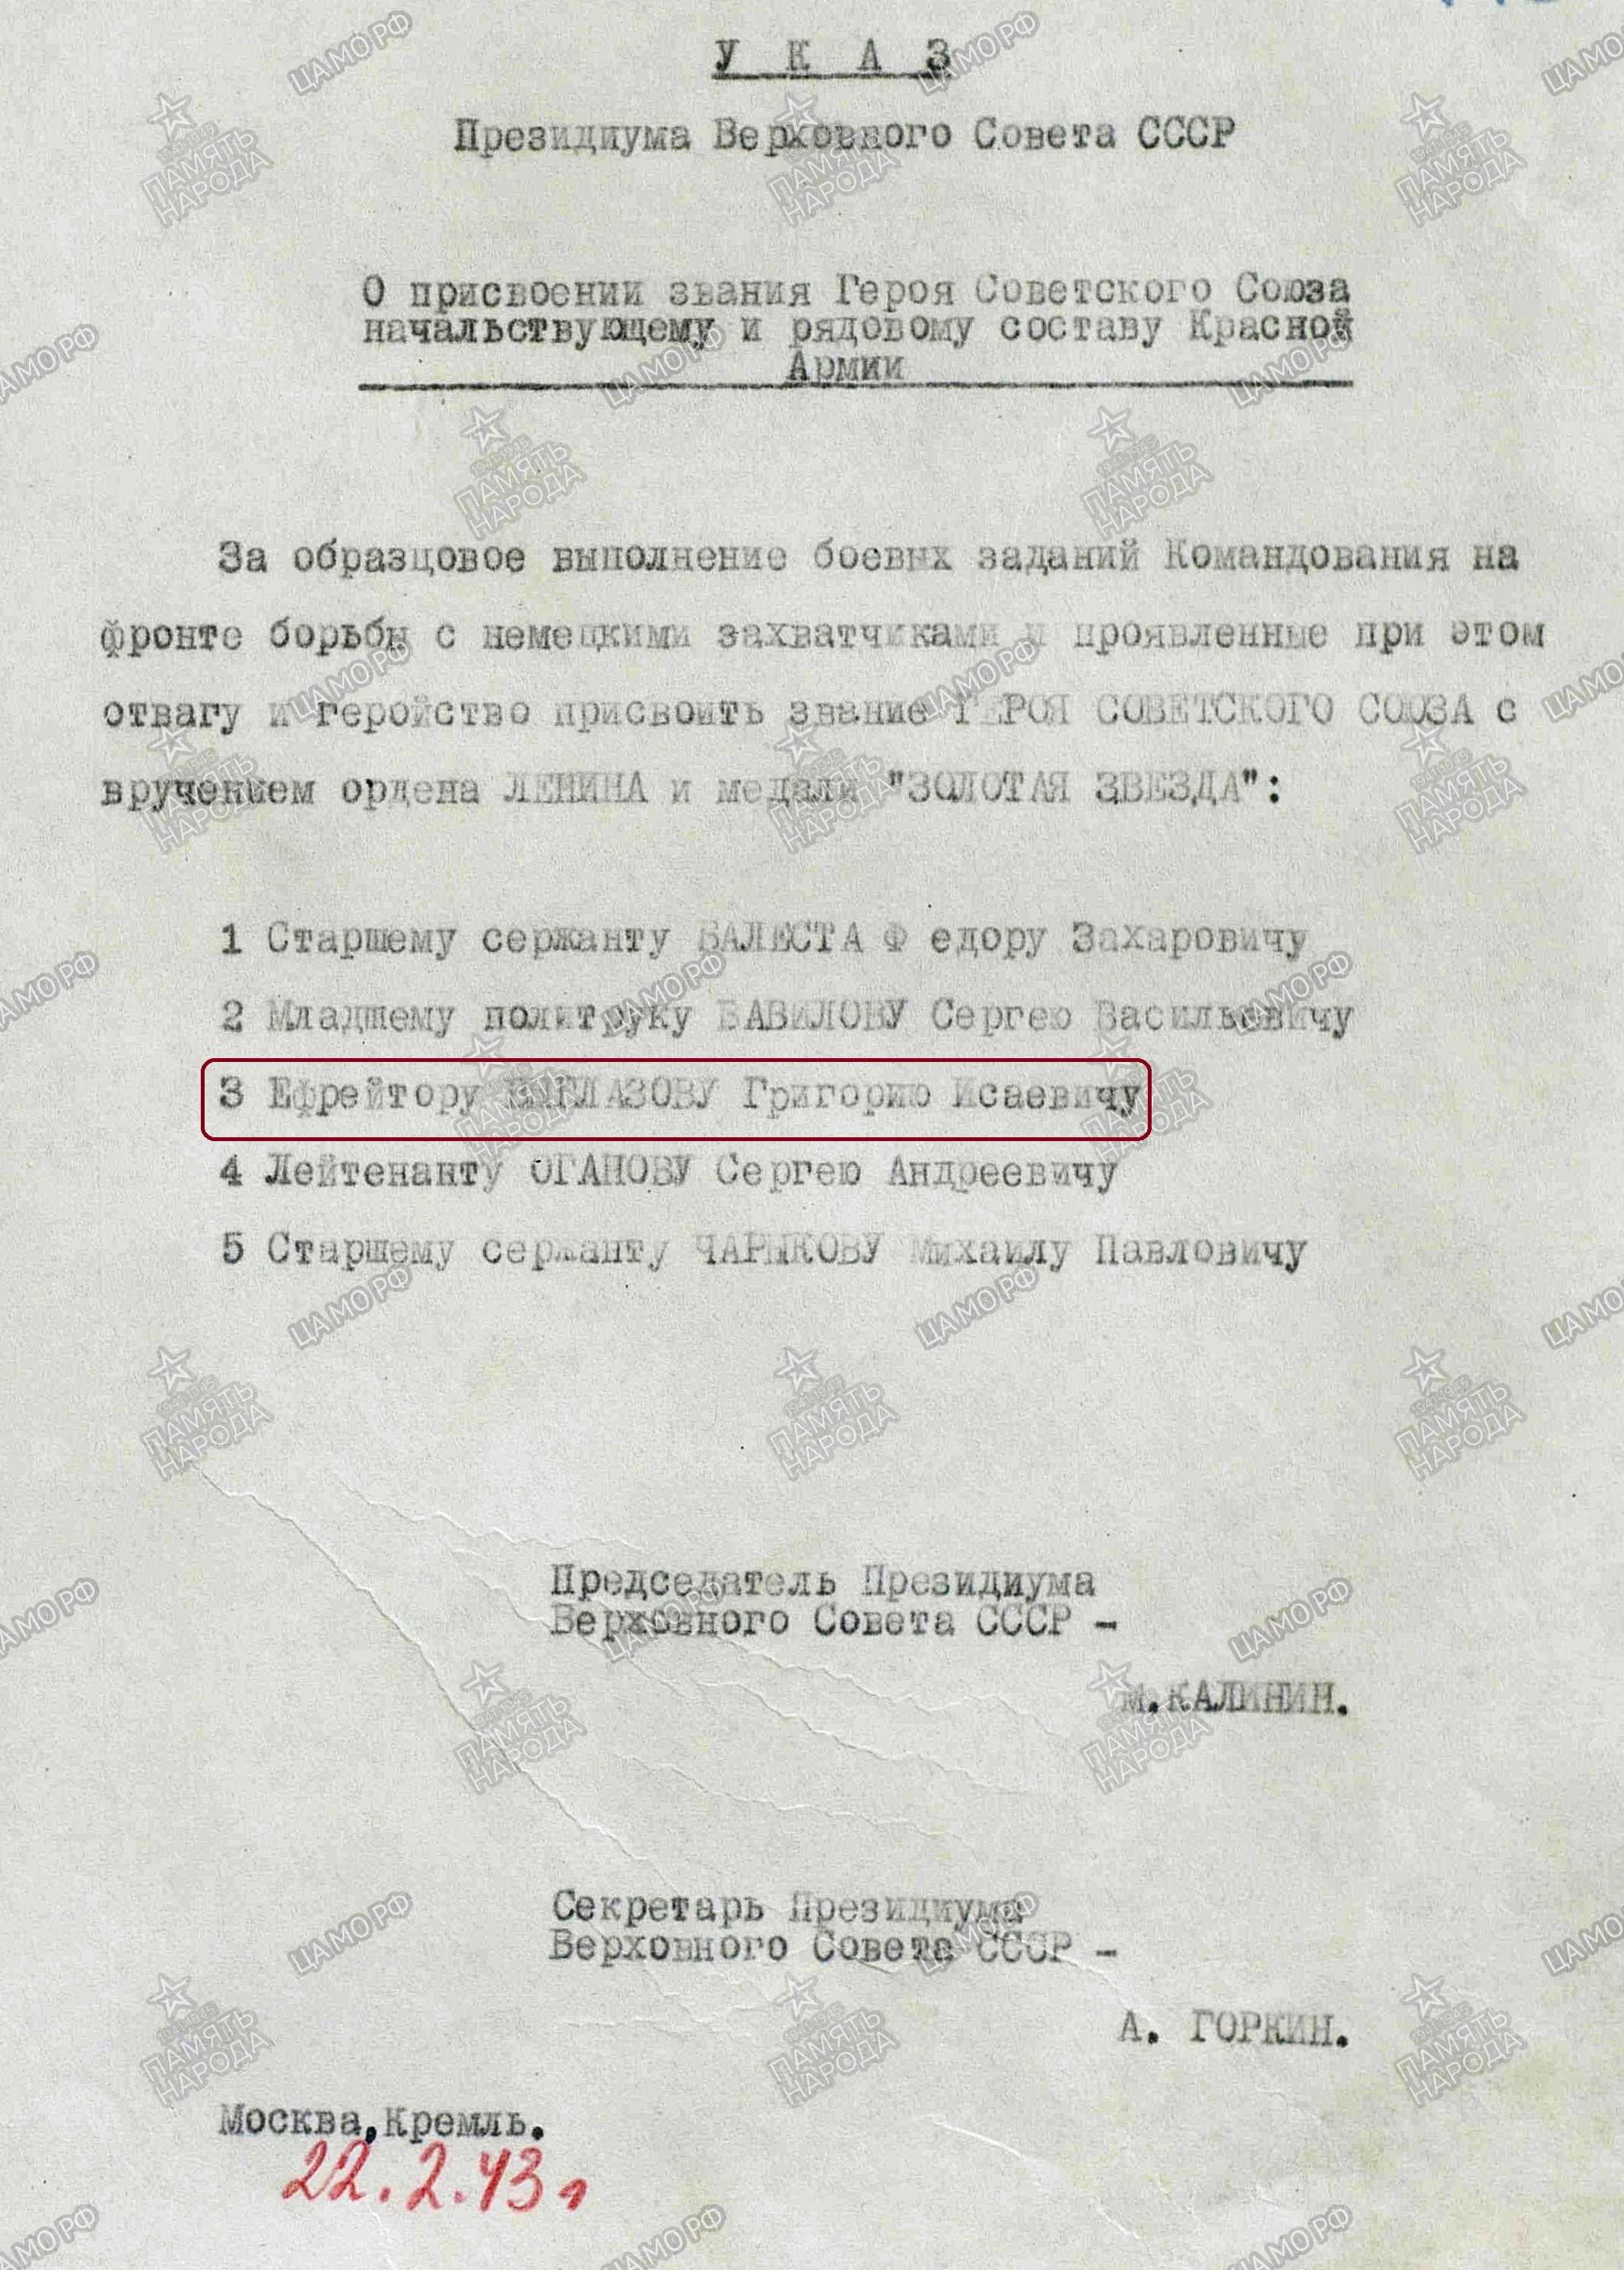 Указ Президиума Верховного Совета СССР от 22.02.1943.jpg